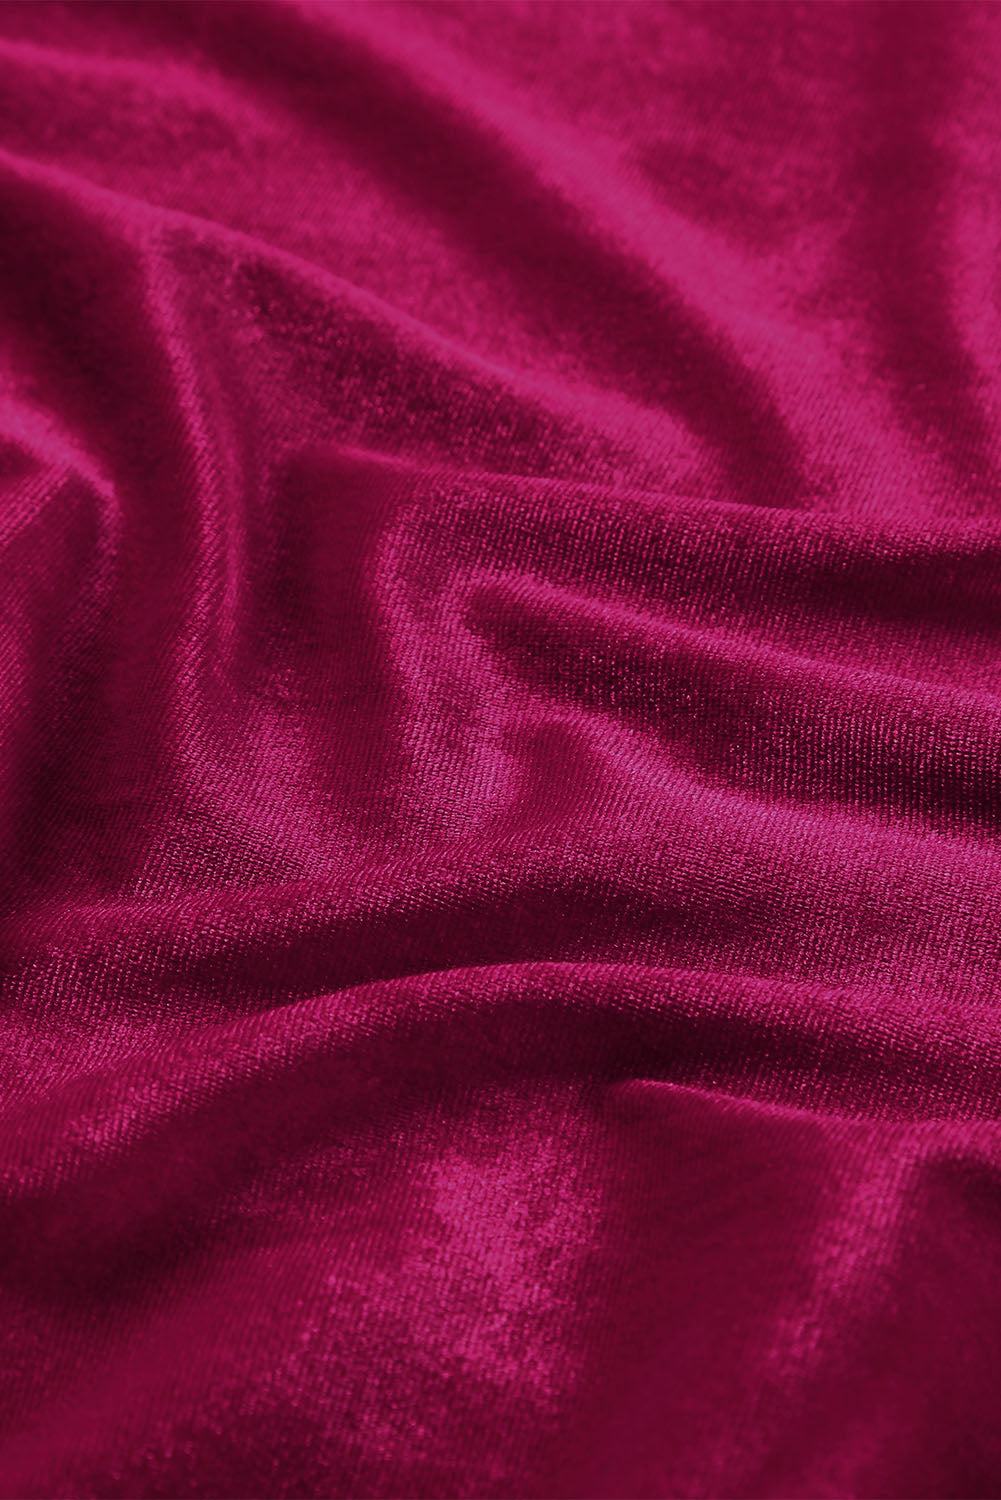 Red Casual Velvet Lapel Pocket Long Coat